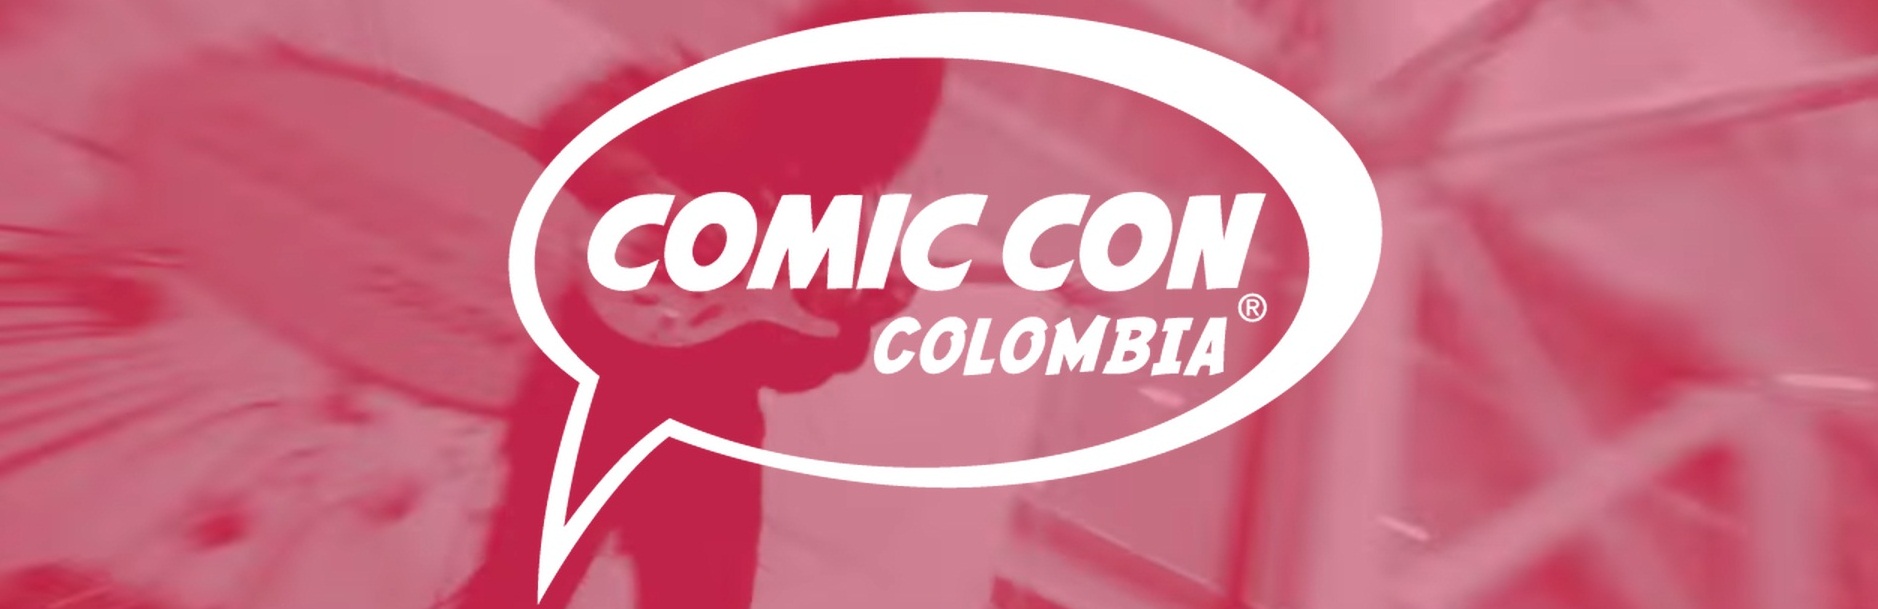 ARTISTAS EN COMIC CON COLOMBIA